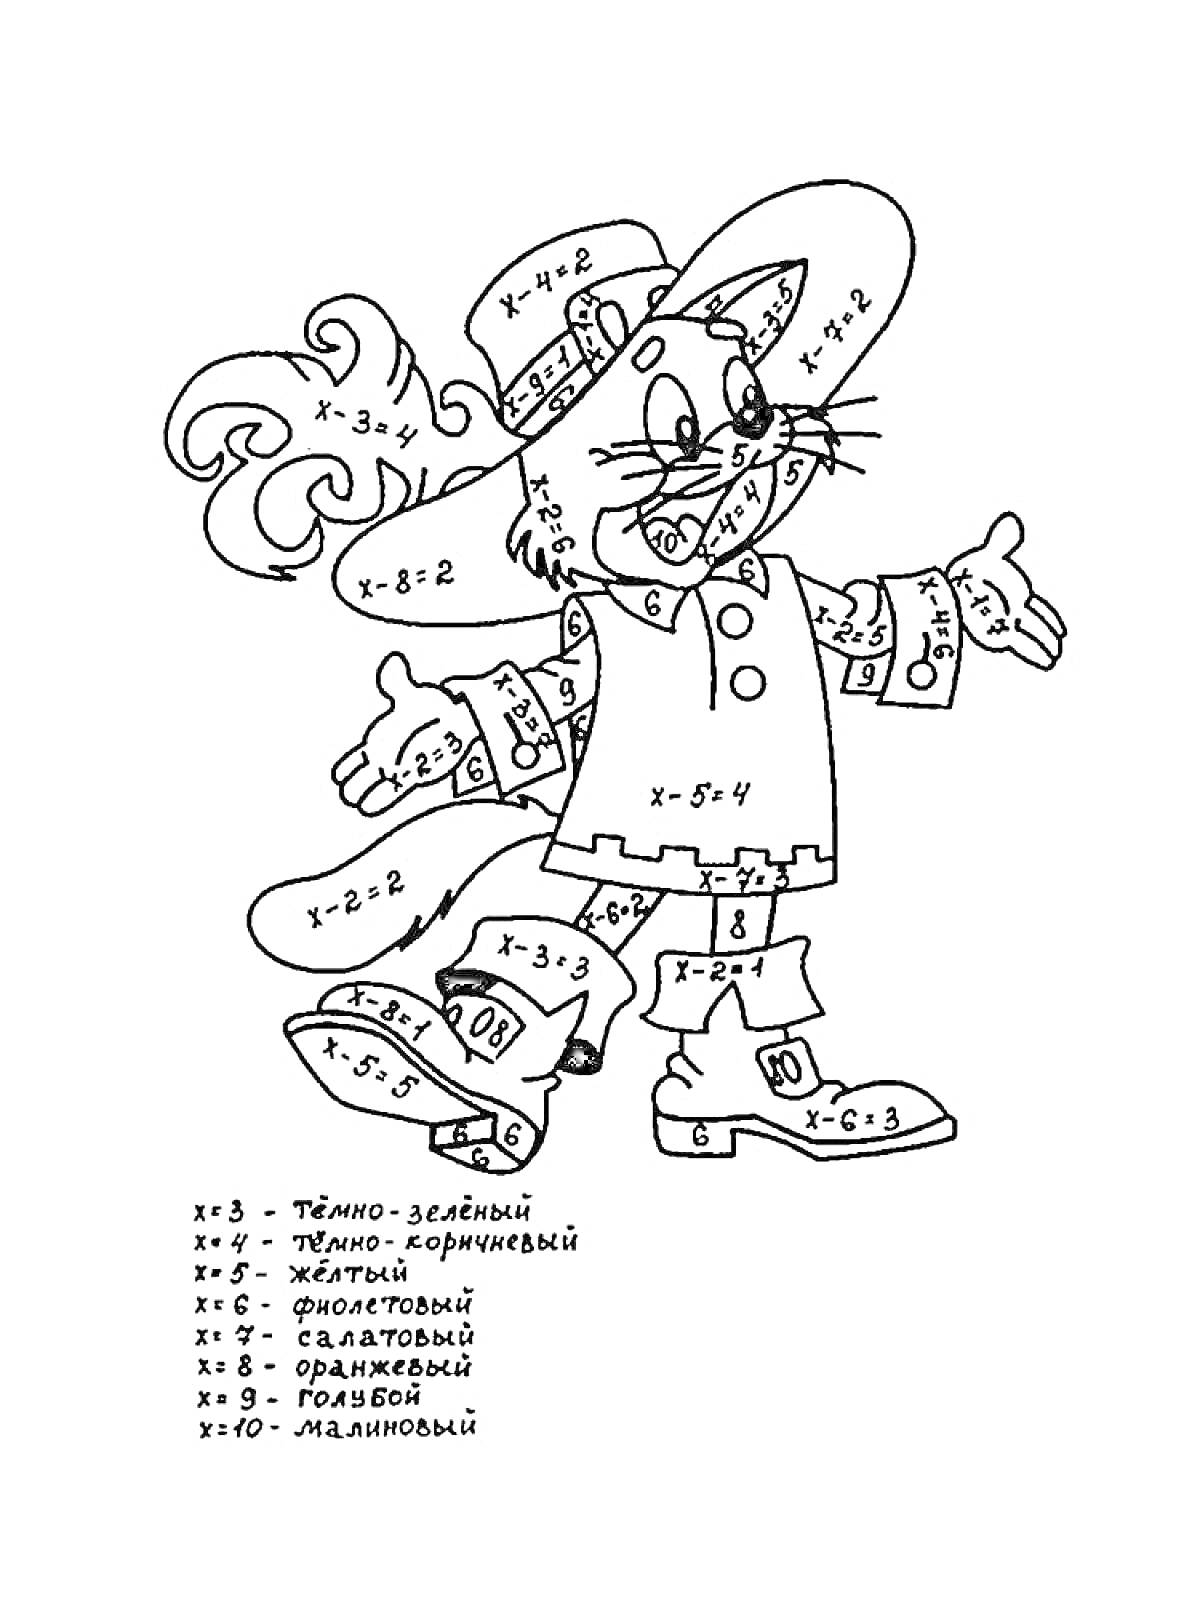 Раскраска Кот в шляпе с цветовой раскраской по математическим примерам